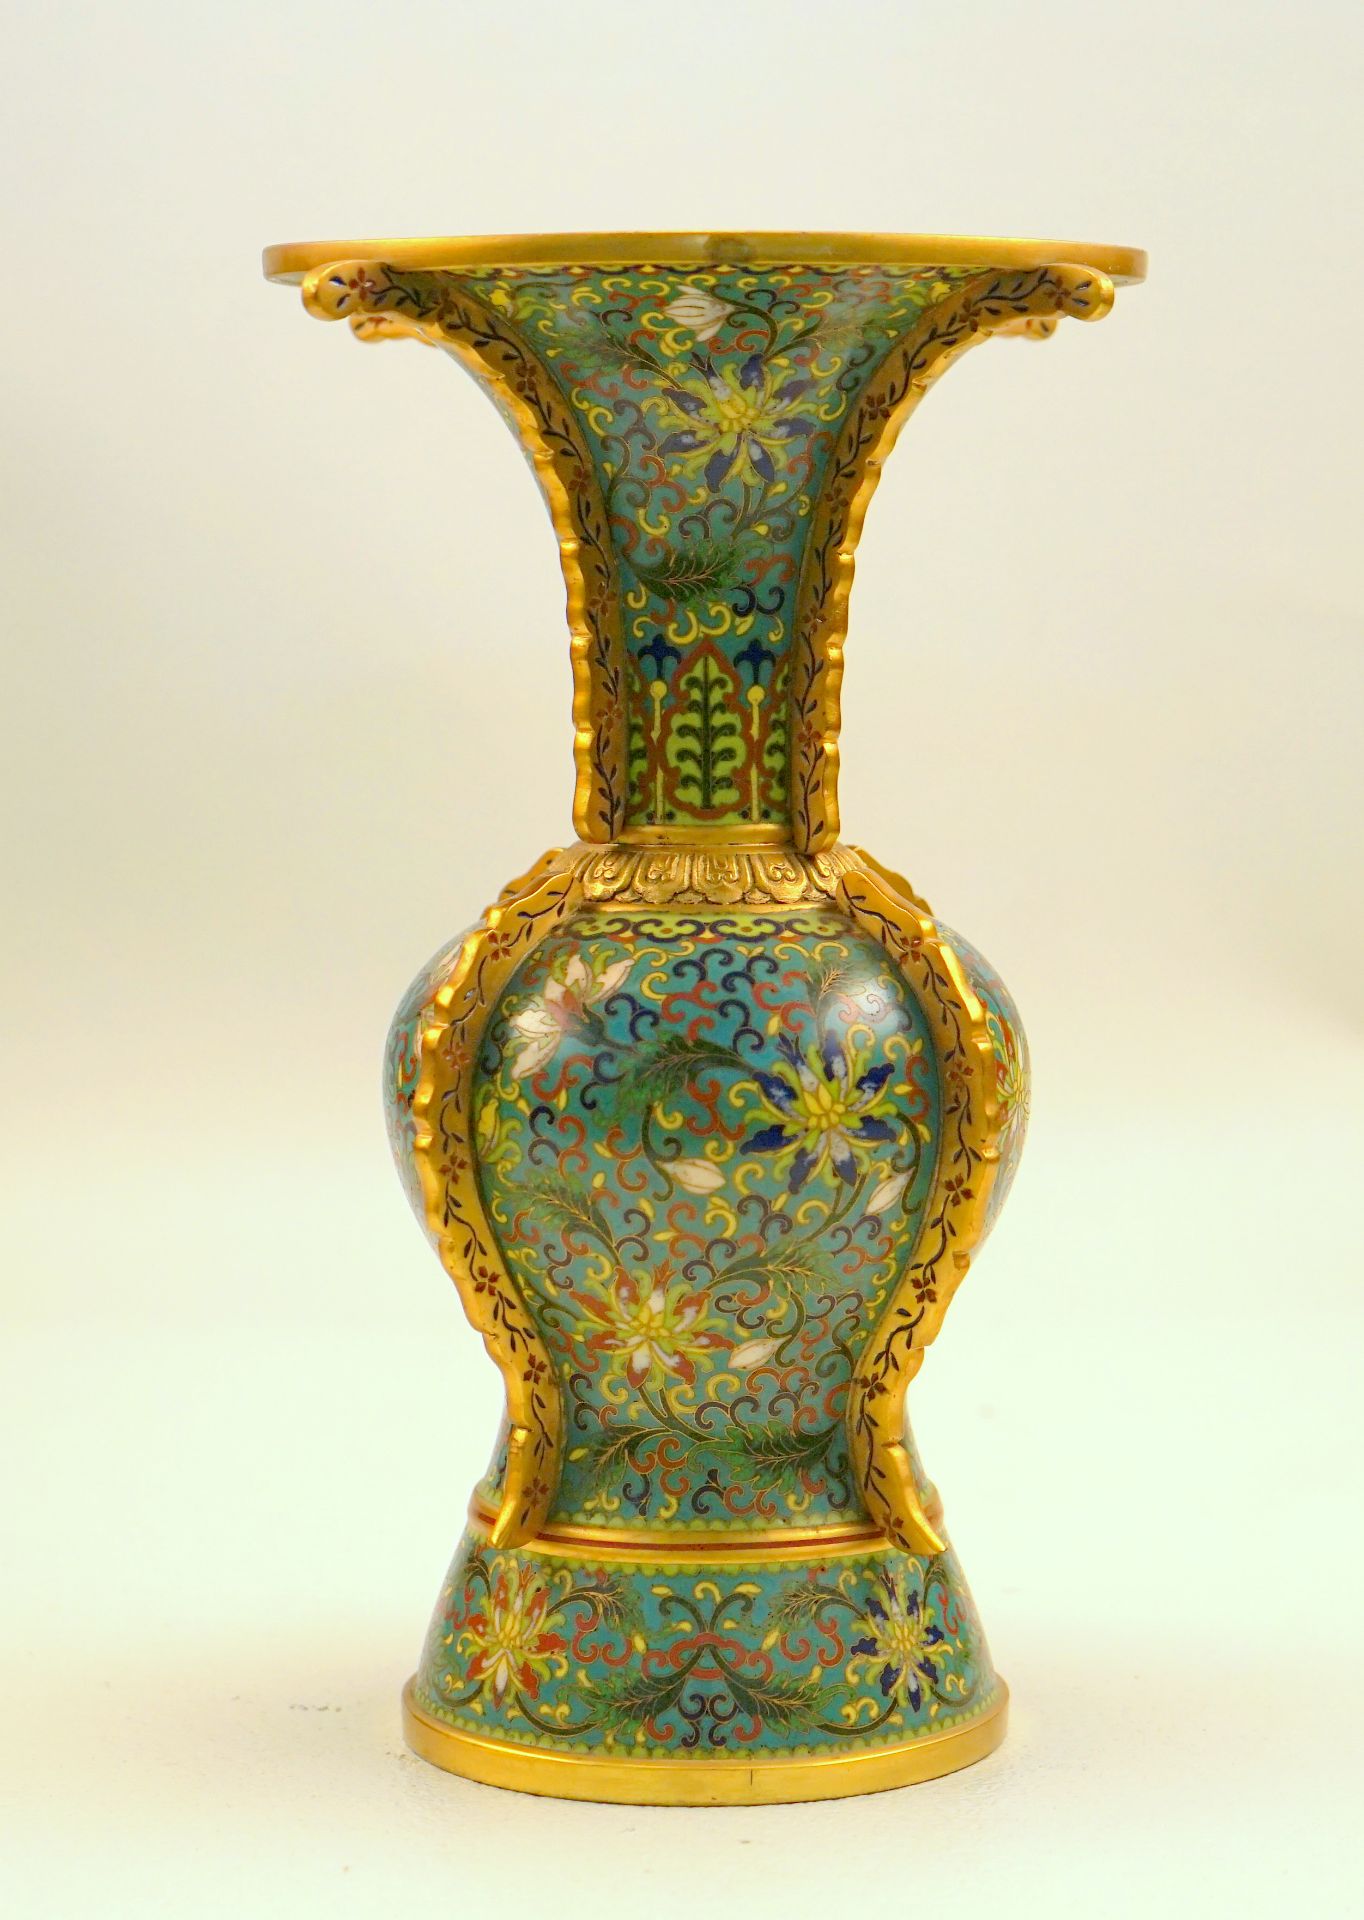 Cloissonnéevase mit aufwendigen Lotosdekor,Bronze emailliert und vergoldet, Balusterform mit